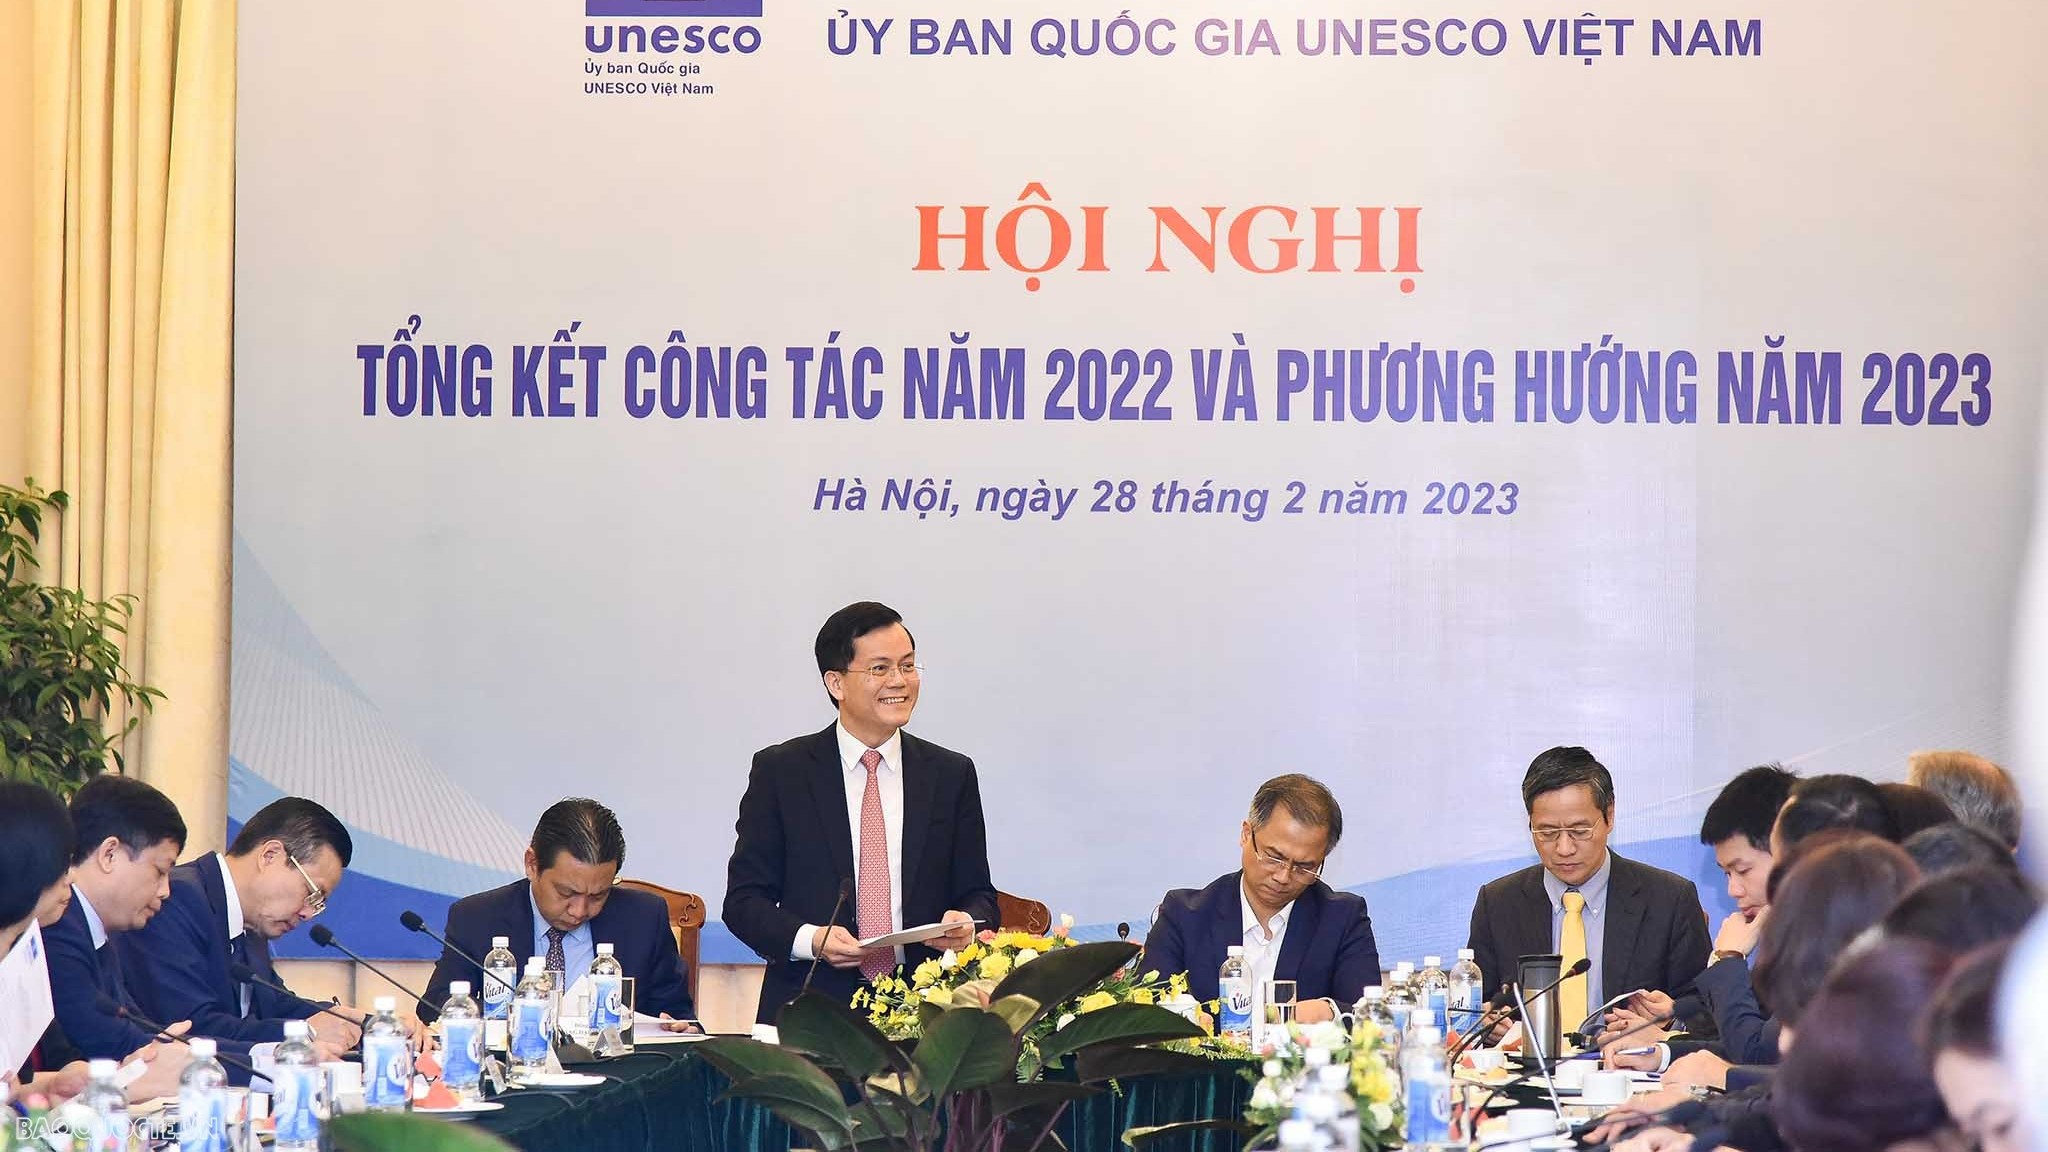 Để quan hệ hợp tác giữa Việt Nam và UNESCO ngày càng phát triển